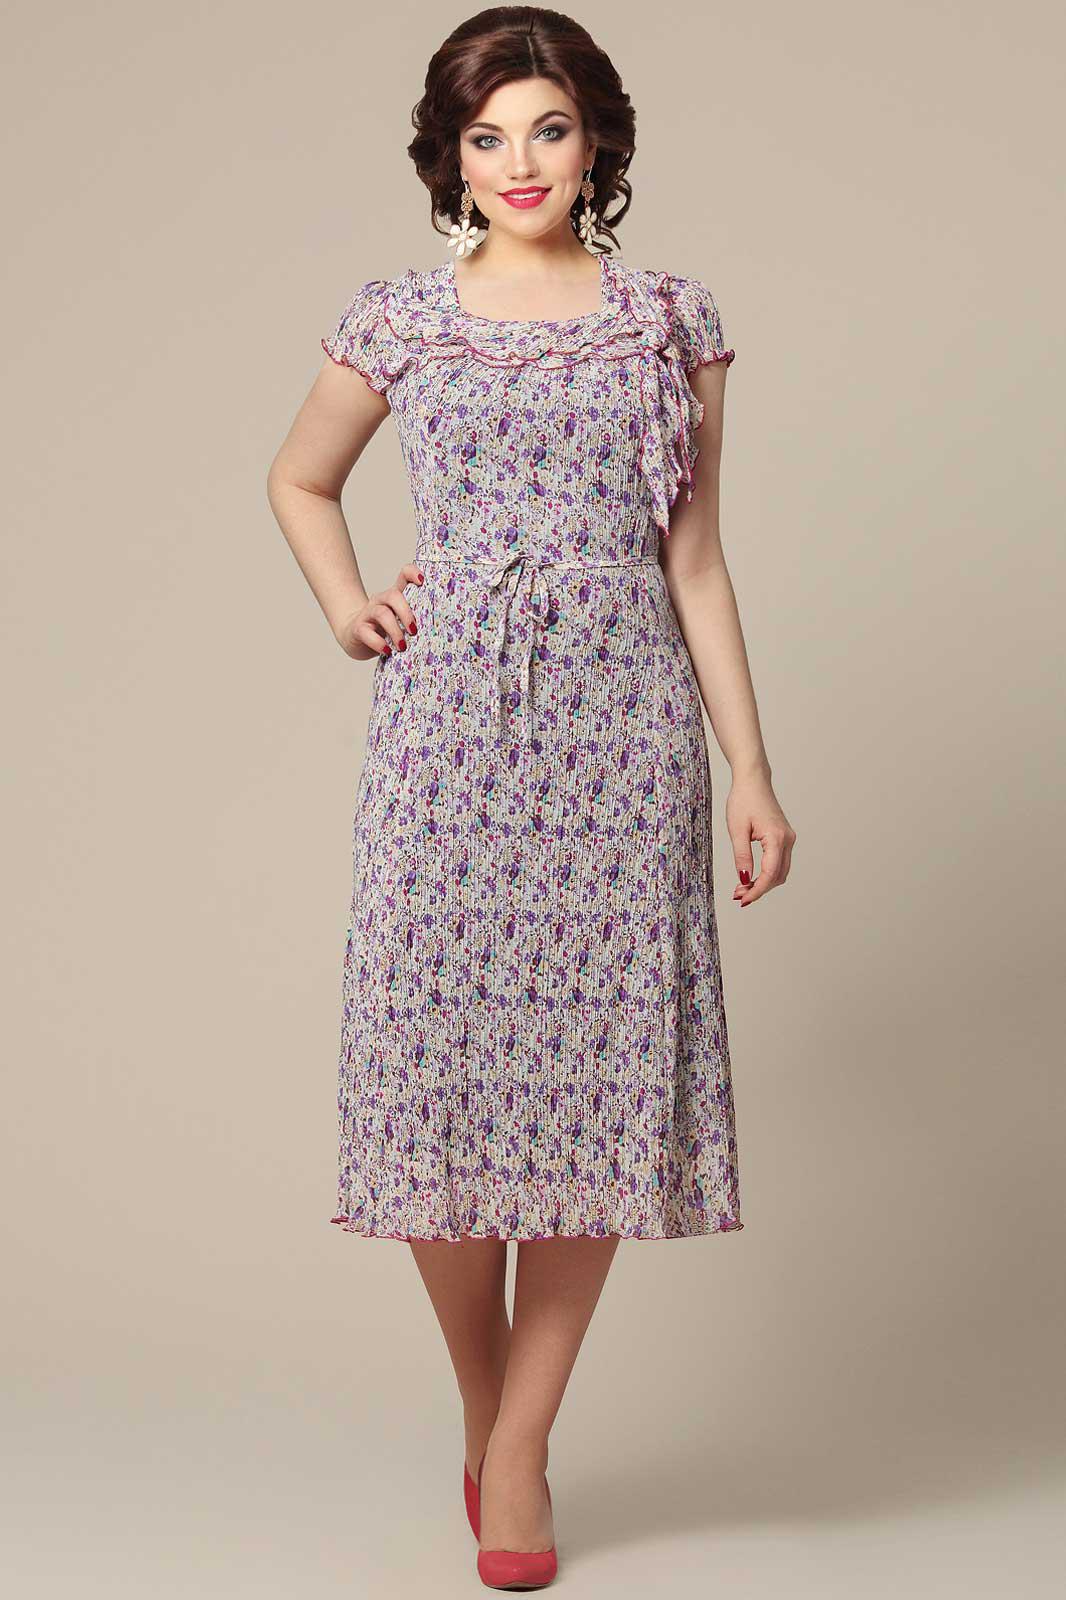 Интернет Магазин Валберис Женская Одежда Платья